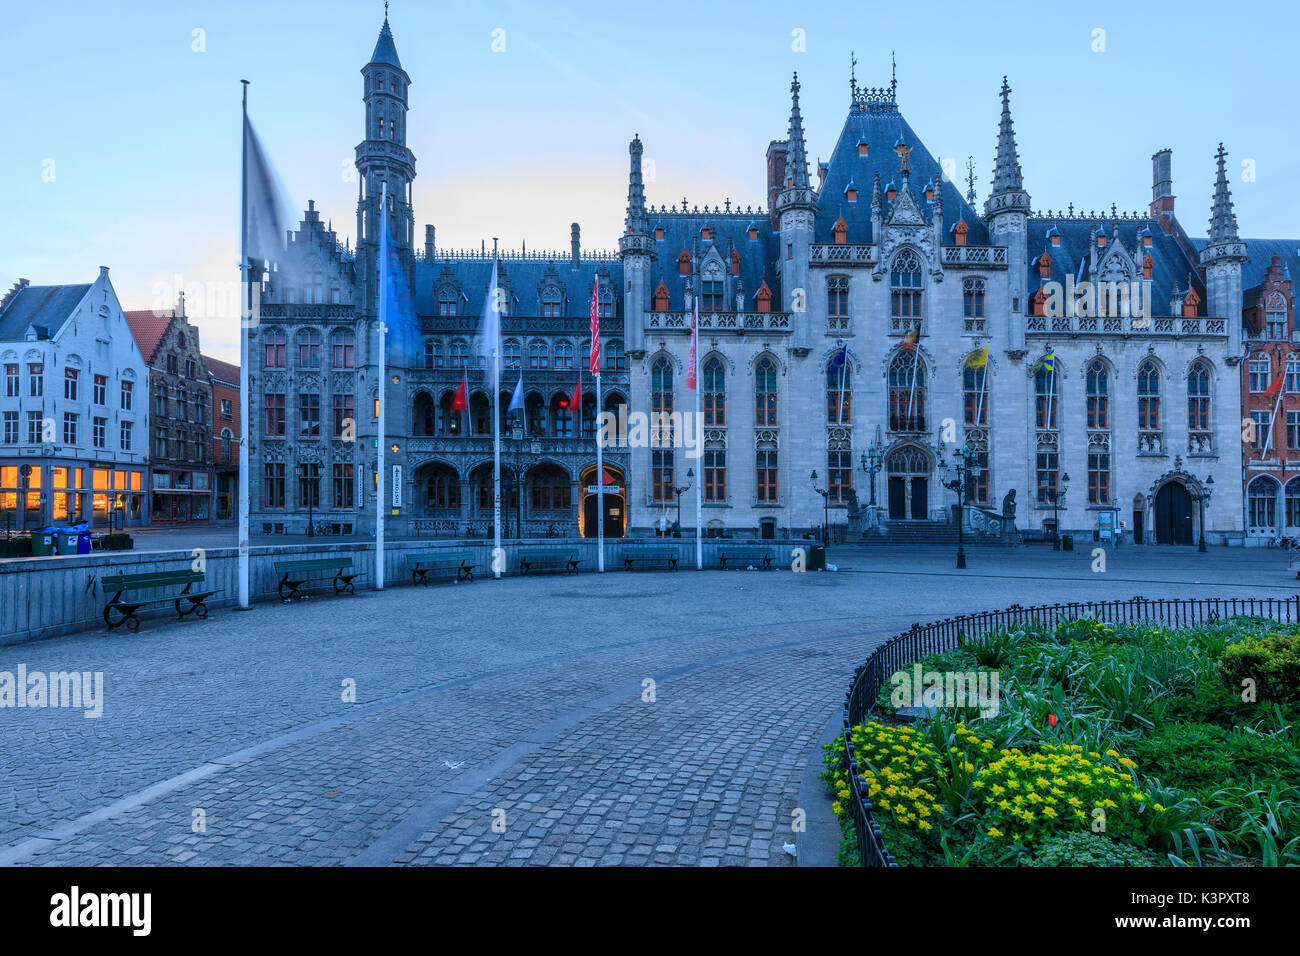 Le spie blu del tramonto su palazzo gotico del Provinciaal Hof in piazza del mercato di Bruges Fiandre Ovest Europa Belgio Foto Stock